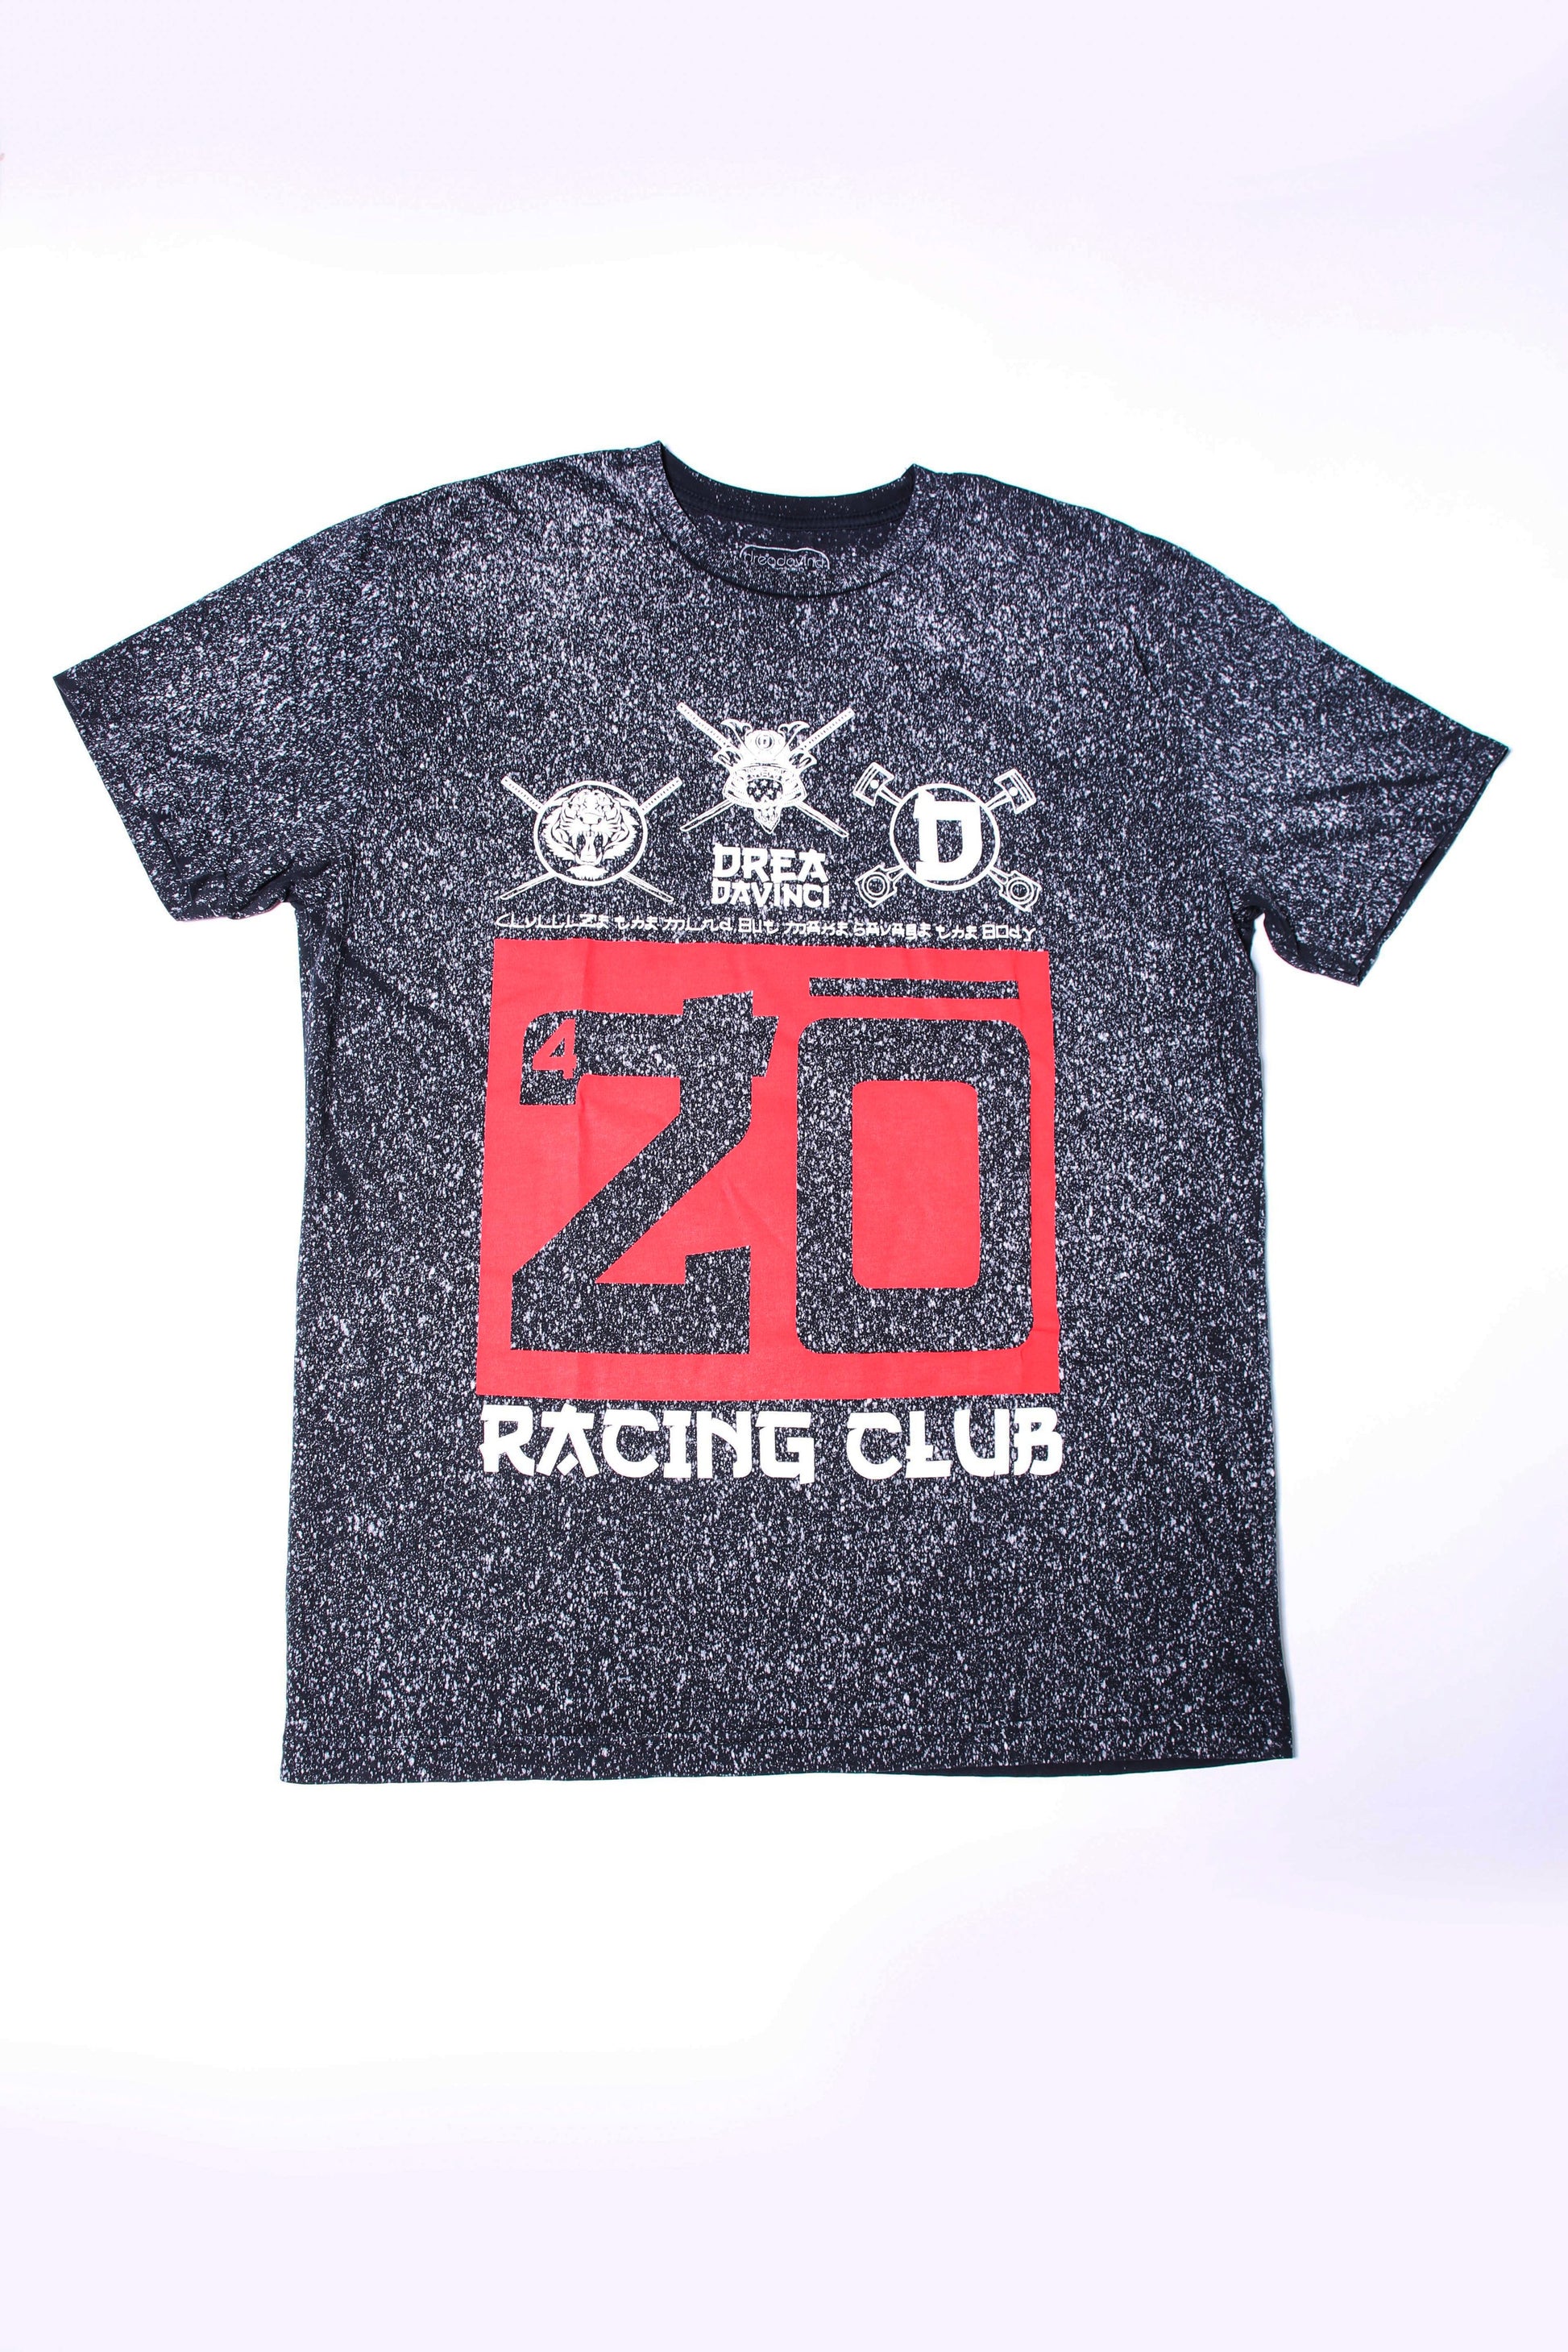 420 Racing Club Extendo - dreadavinci 